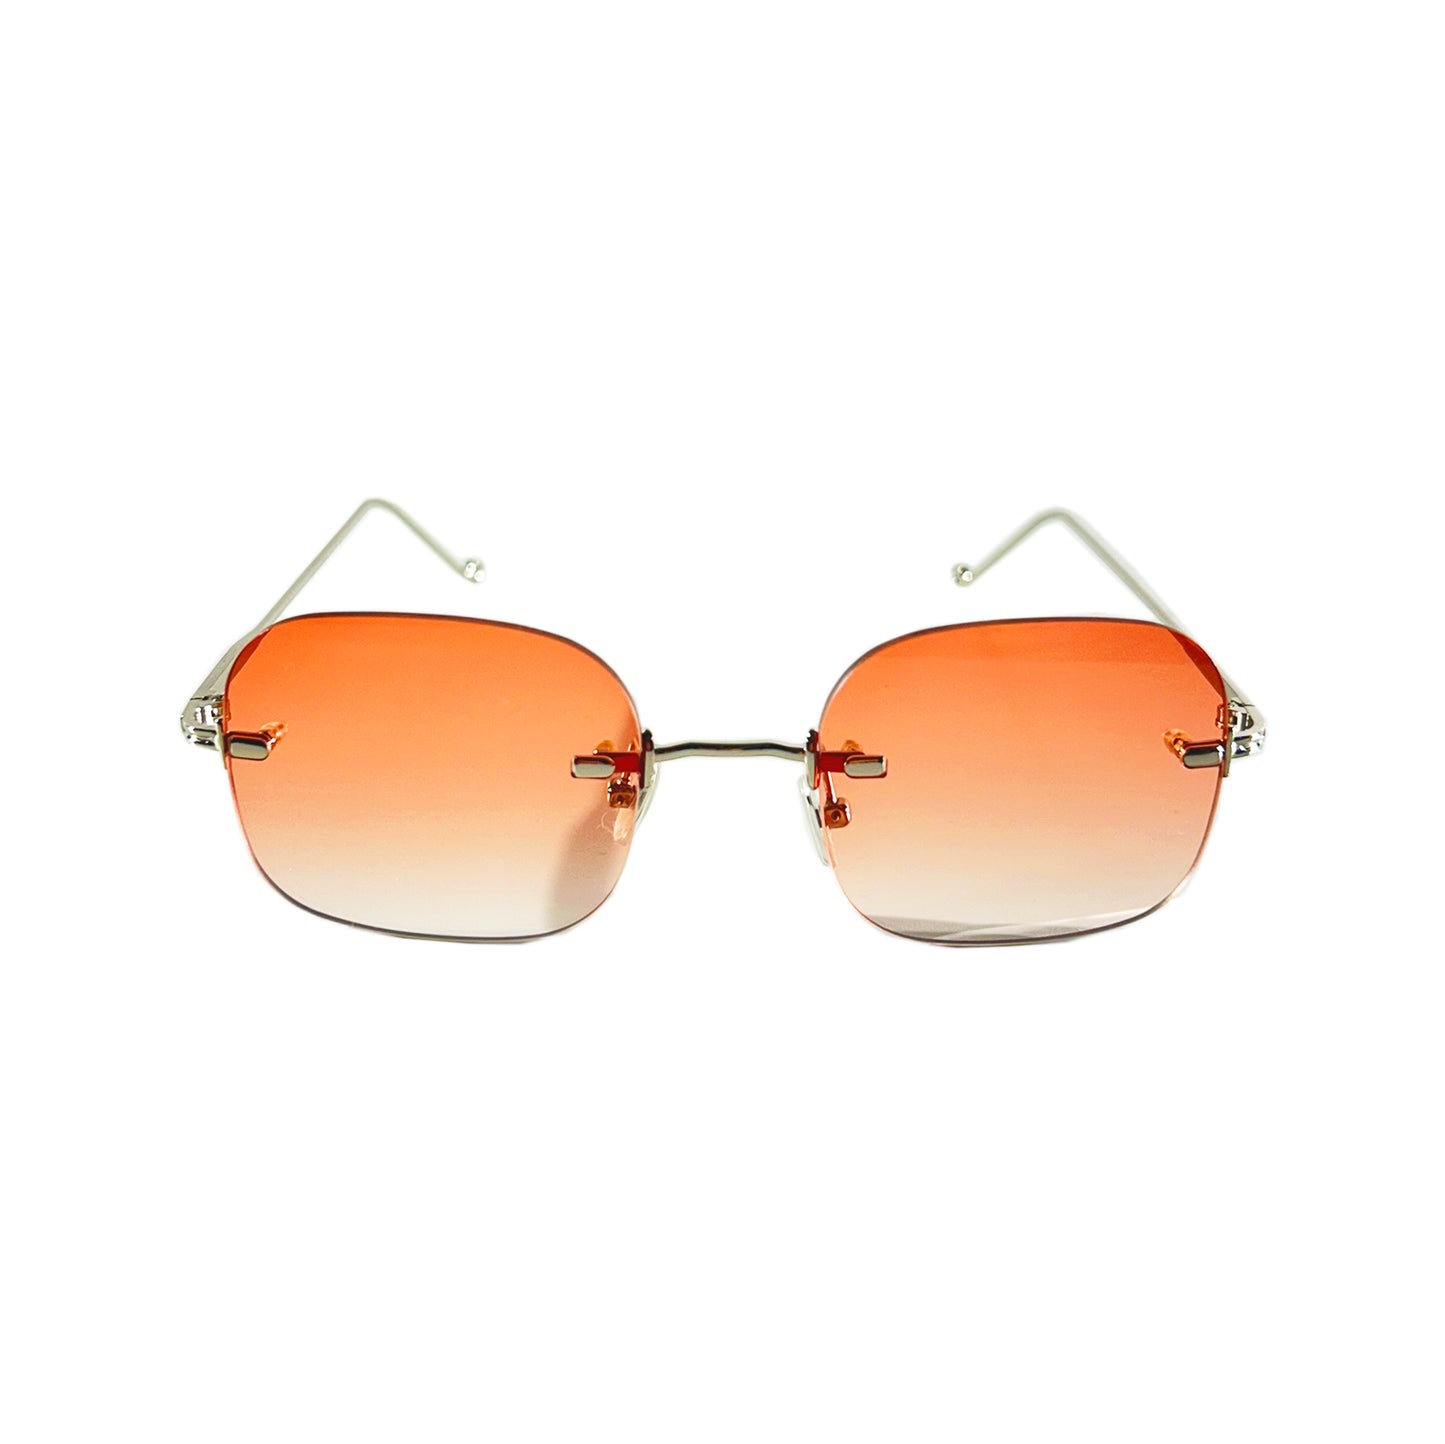 Vintage Sunglasses Frameless